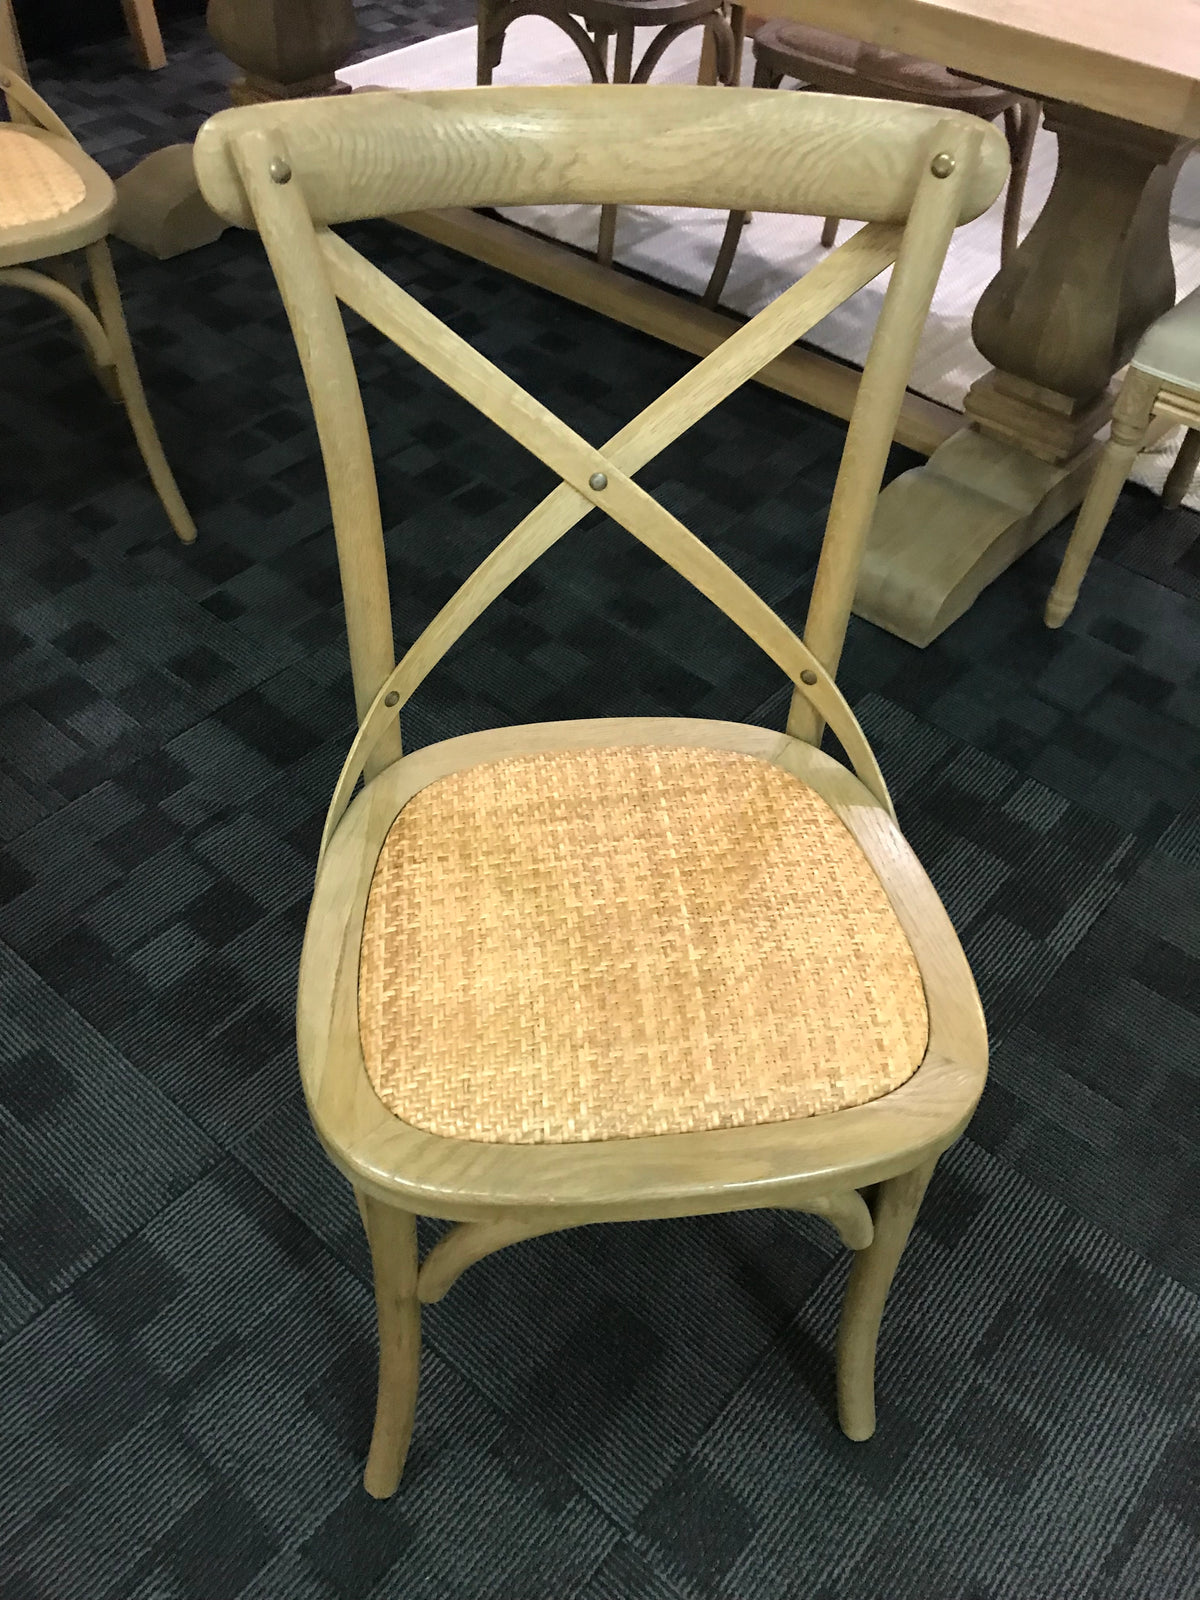 Oak Cross Back Dining Chair - Cool Oak - FLOORSTOCK - 4 only